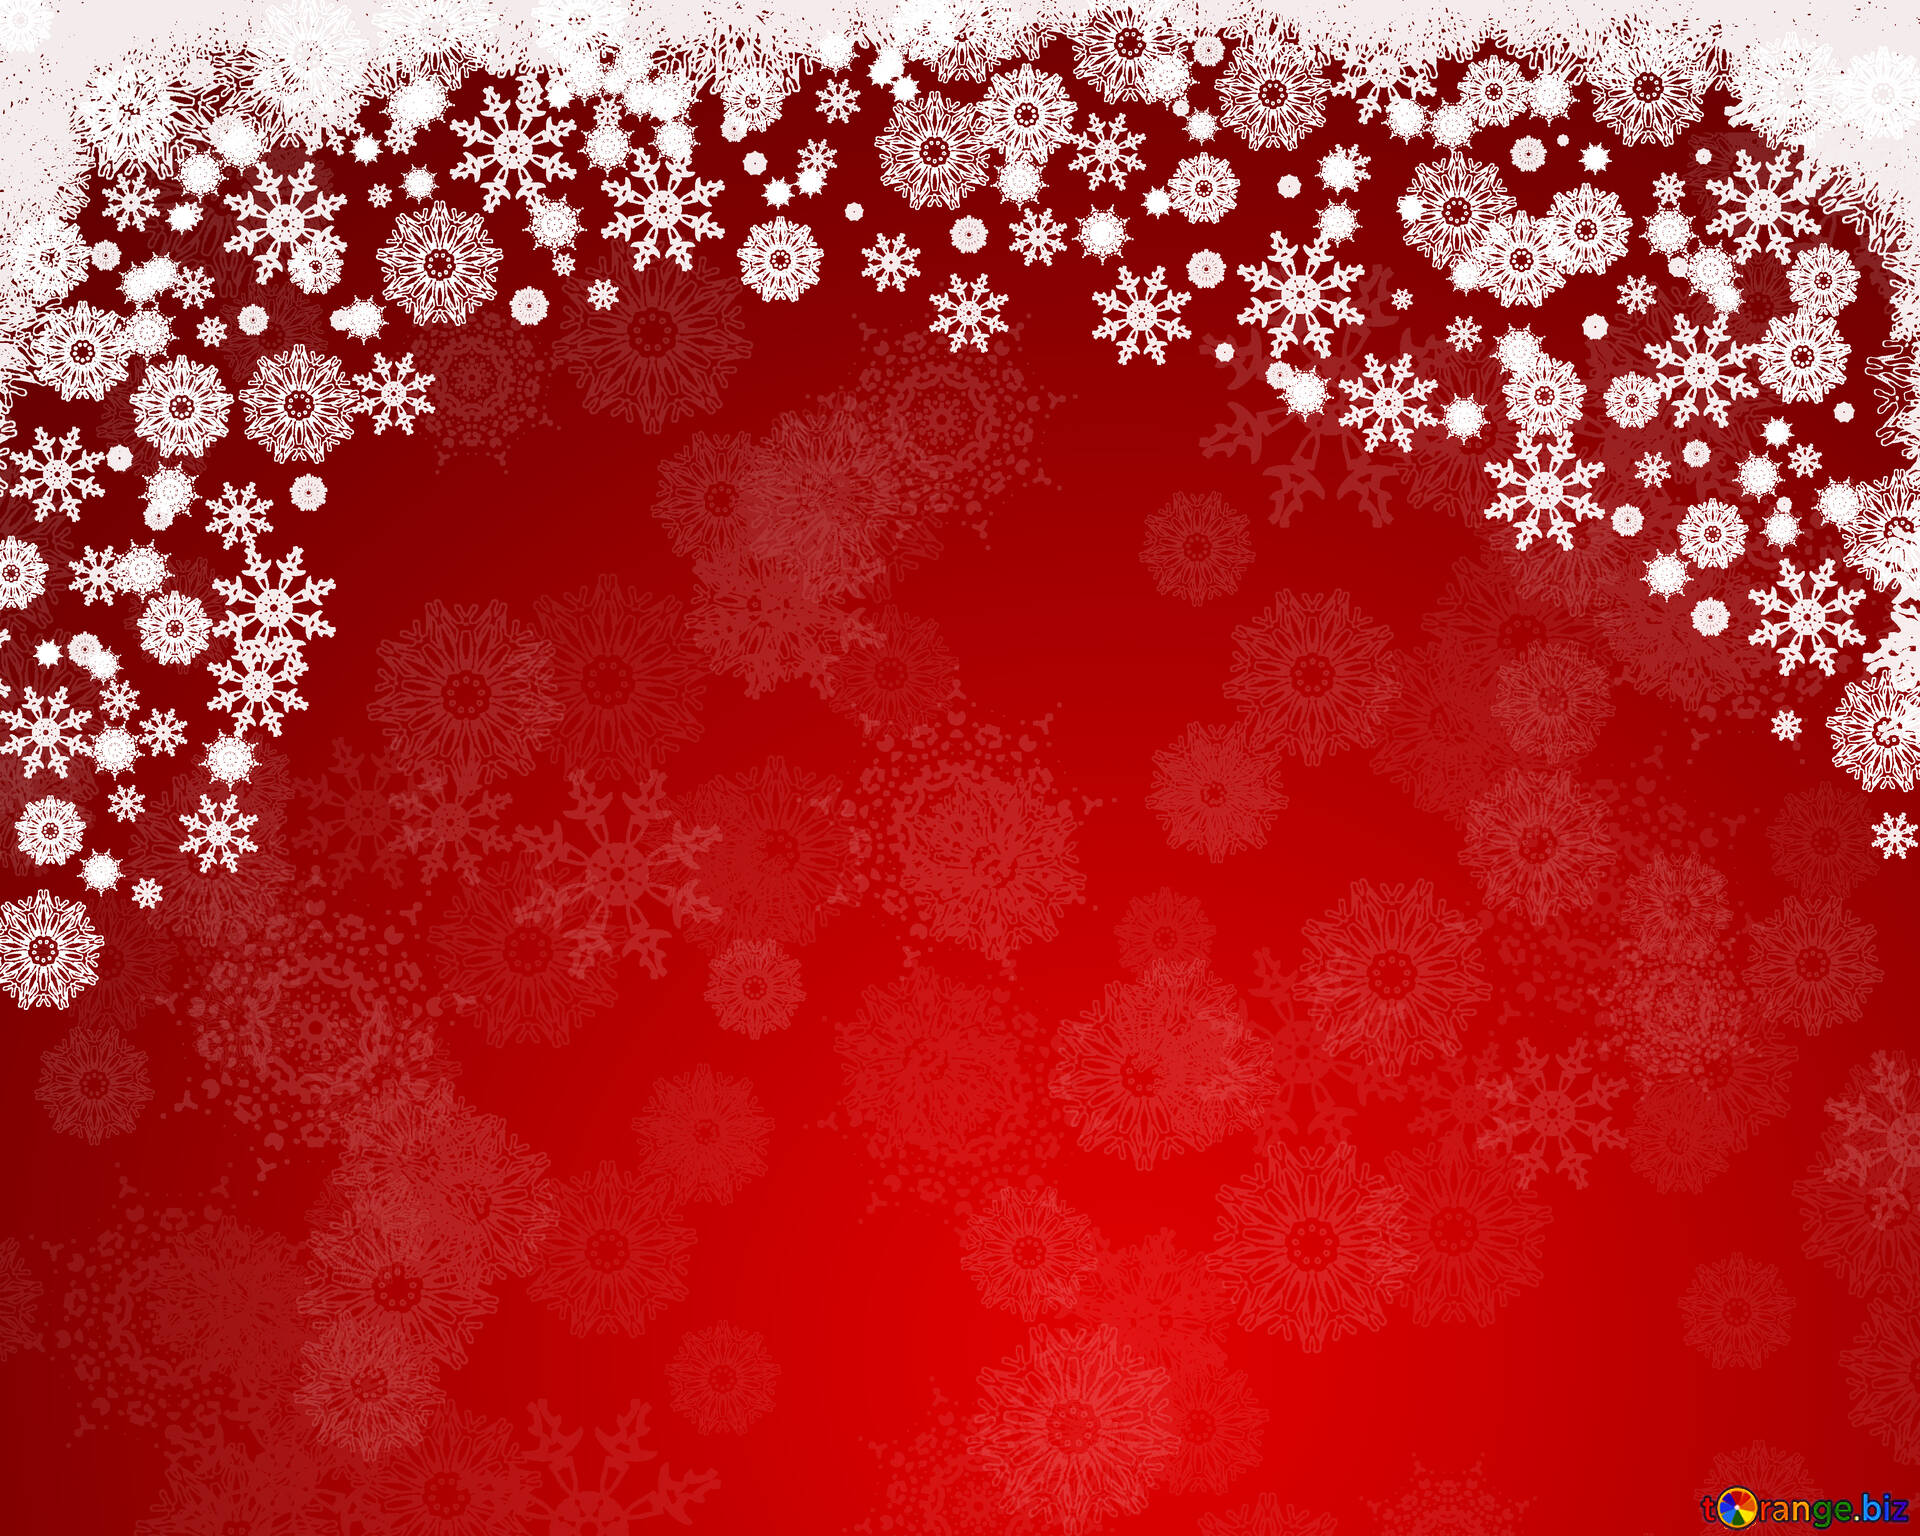 Sfondi Natalizi Rossi.Cartoline Di Natale Sfondo Rosso Per Le Carte Di Natale E Capodanno Clip Art 40655